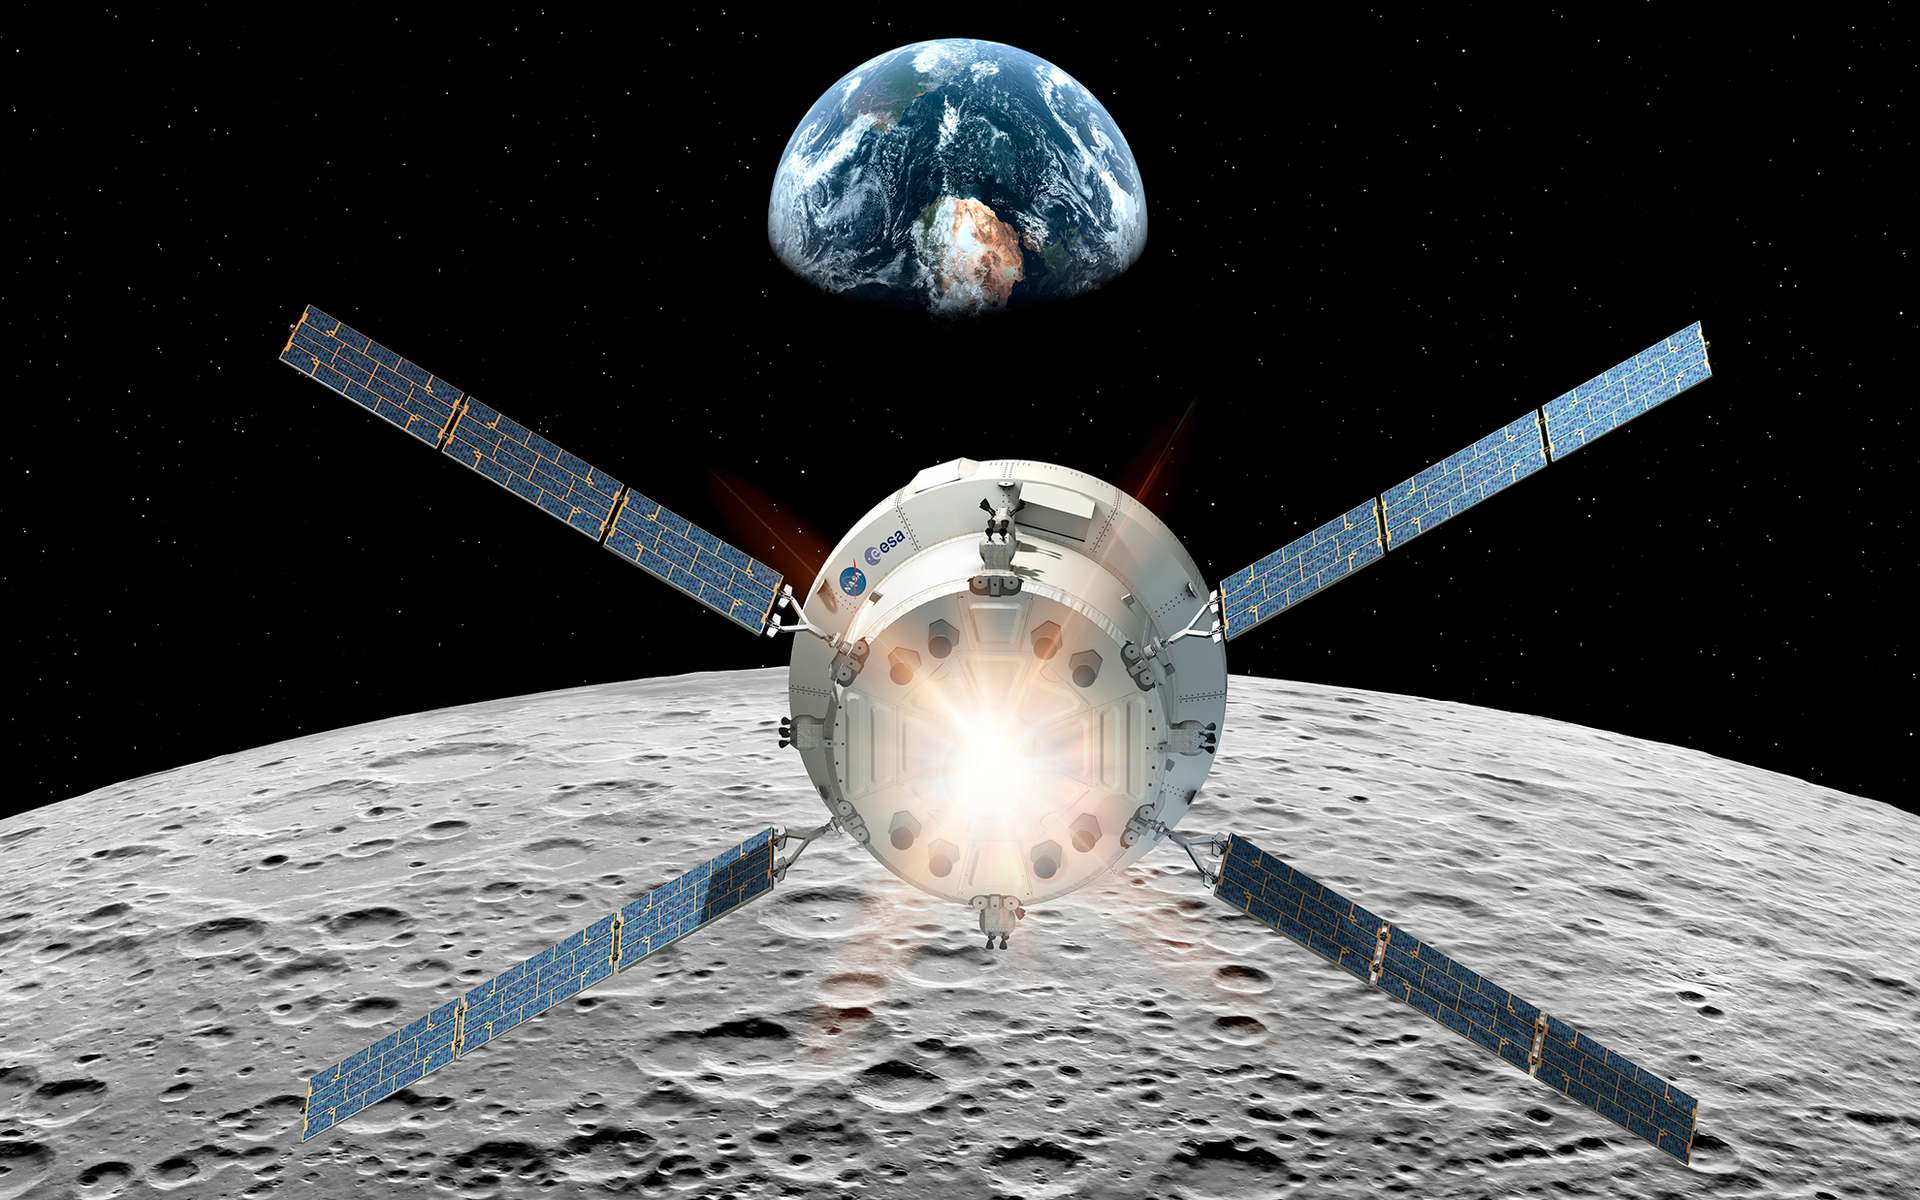 Le véhicule Orion de la Nasa et son module de service fourni par l'Agence spatiale européenne. Ce module a pour fonction de propulser la capsule Orion, d'assurer son contrôle thermique et de lui fournir la puissance électrique nécessaire à son bon fonctionnement, en plus de stocker les réserves d'eau, d'oxygène et d'azote. © ESA, D. Ducros